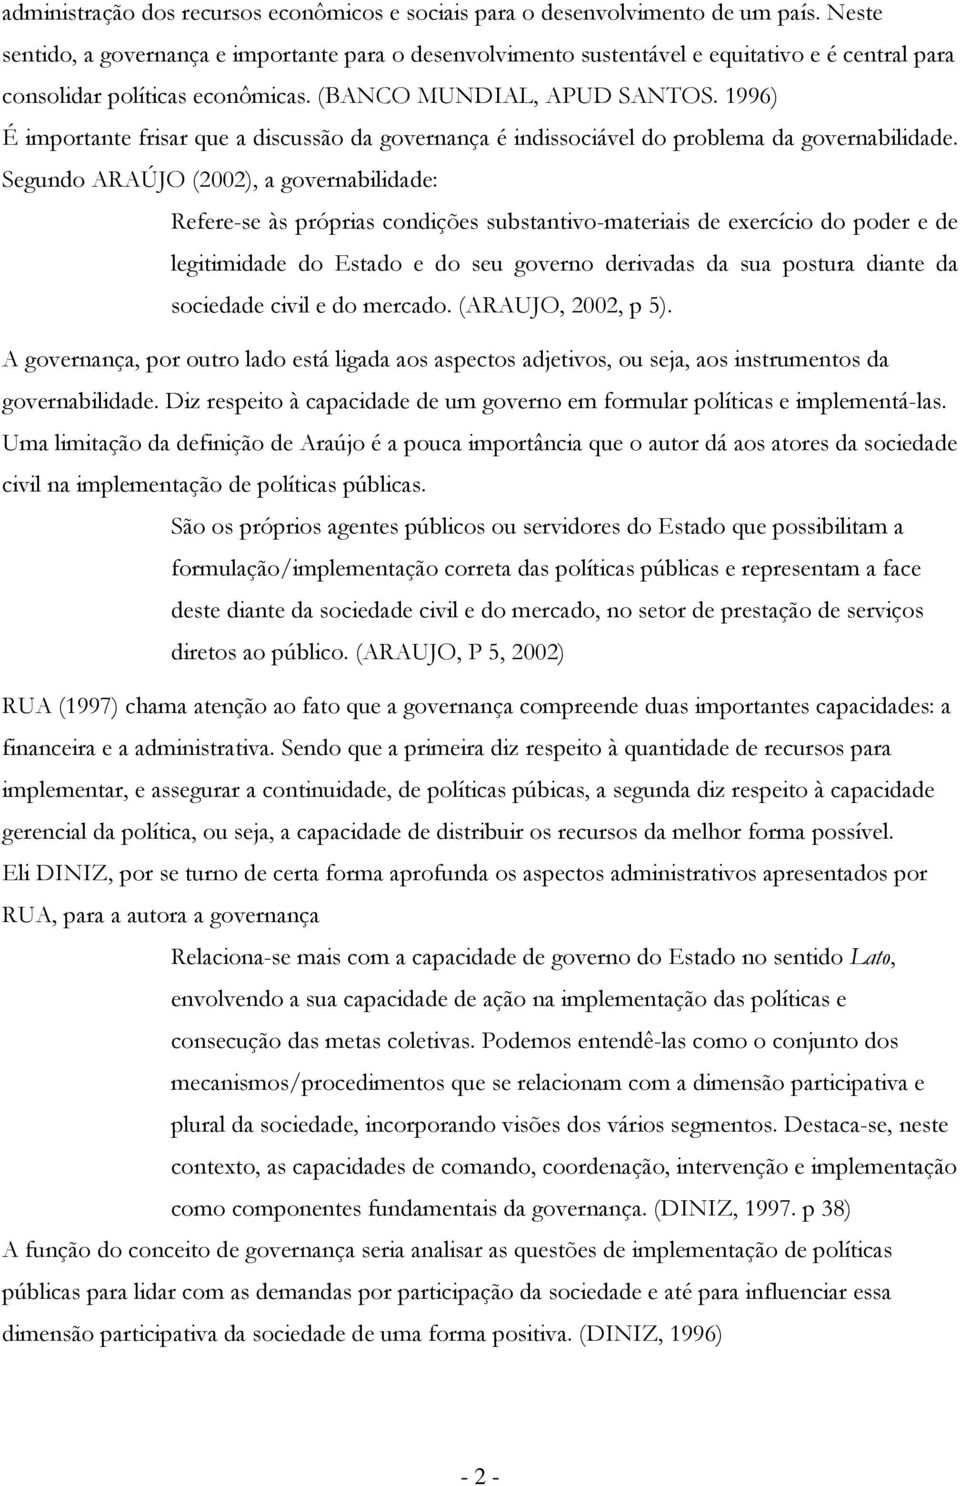 Segund ARAÚJO (2002), a gvernabilidade: Refere-se às próprias cndições substantiv-materiais de exercíci d pder e de legitimidade d Estad e d seu gvern derivadas da sua pstura diante da sciedade civil